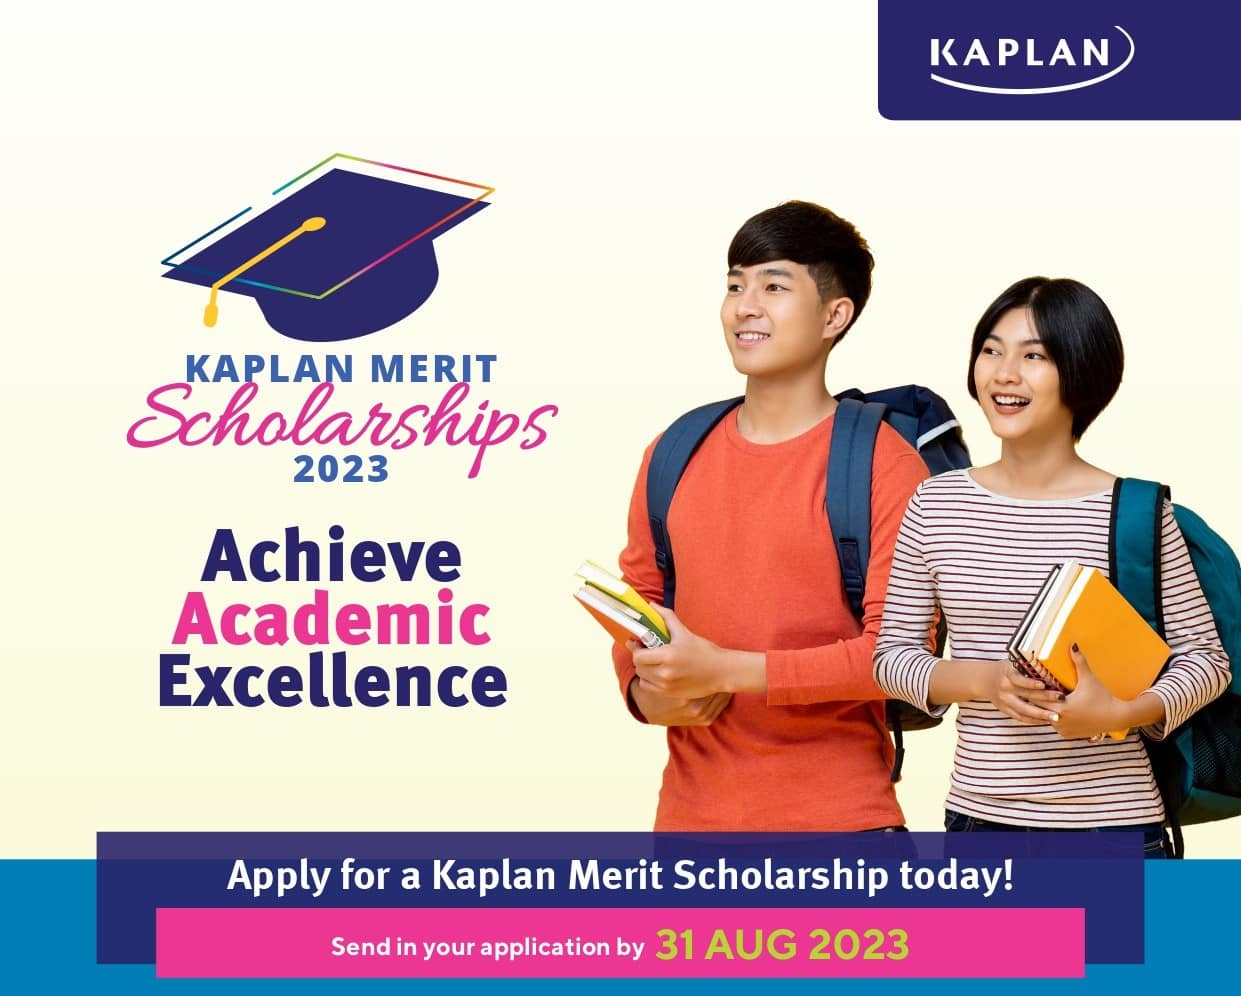 hoc bong kaplan singapore 2023 - Học phí và chuyên ngành của học viện Kaplan Singapore 2023